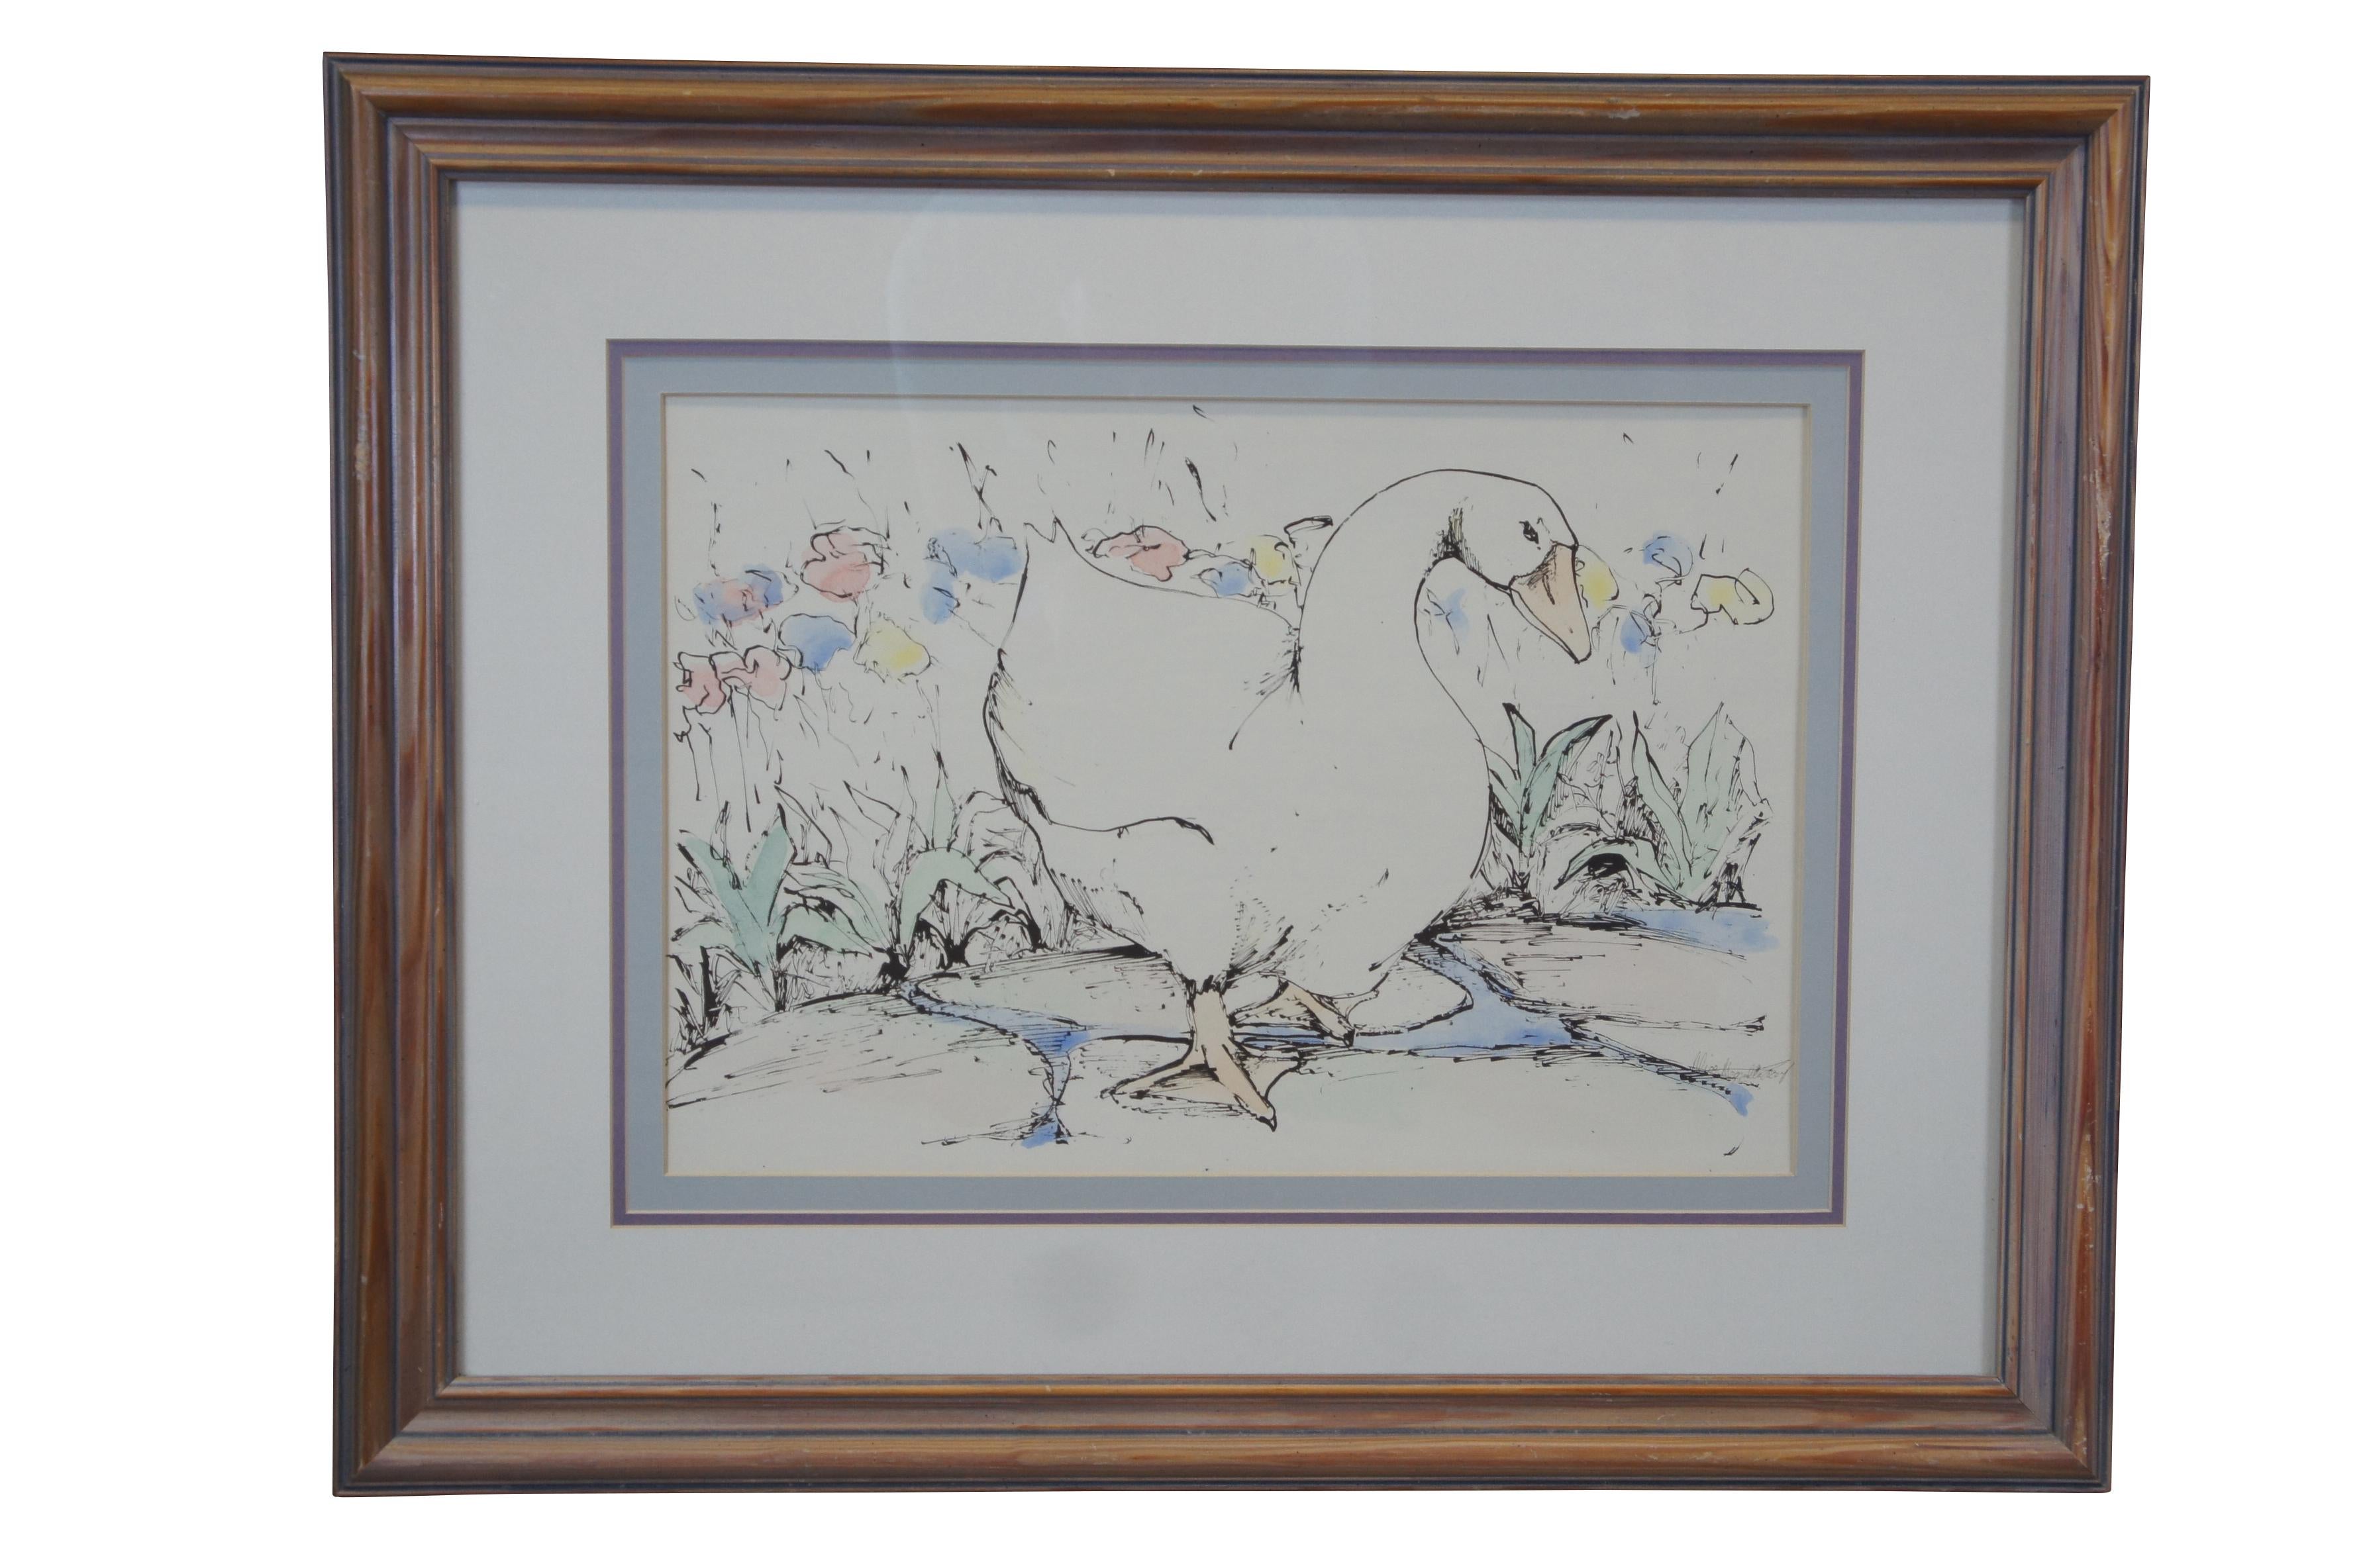 Paire d'aquarelles originales d'Alice Magnolia Lacey, vers le dernier quart du 20e siècle. Chaque tableau représente une oie en liberté sur une allée en pierre ornée de fleurs. Signé le long de la droite. Encadré en chêne.

Dimensions : 29,5